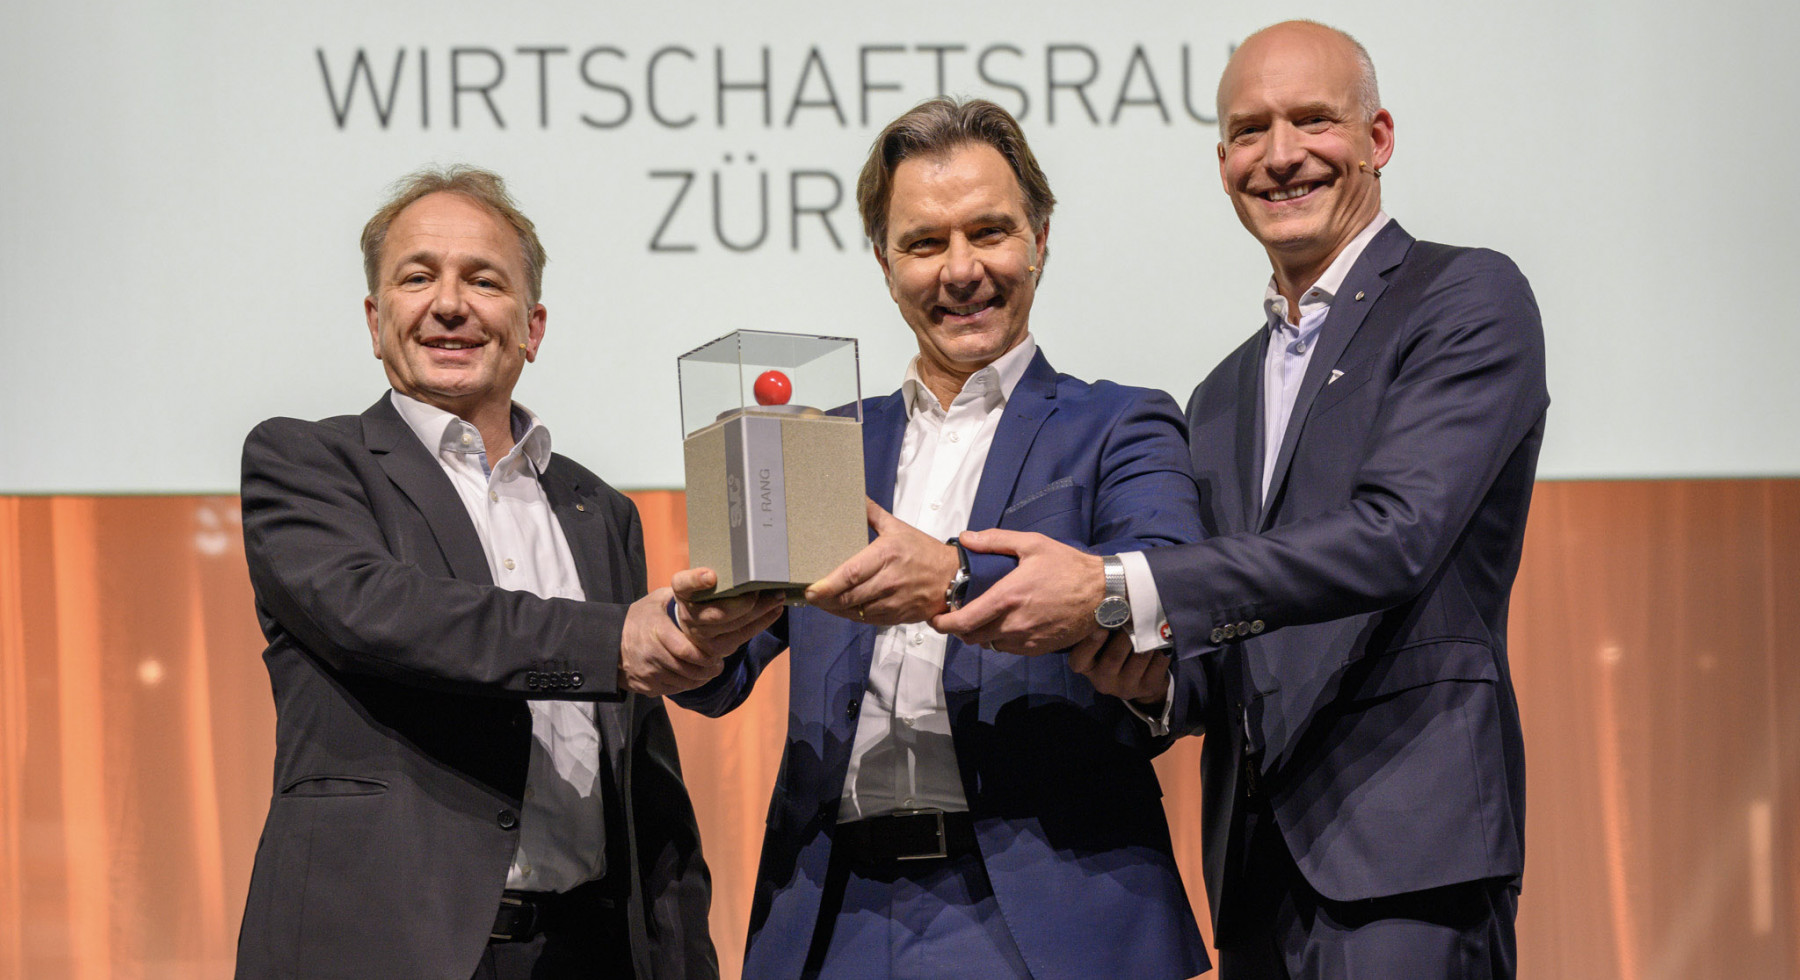 Prix SVC Wirtschaftsraum Zürich 